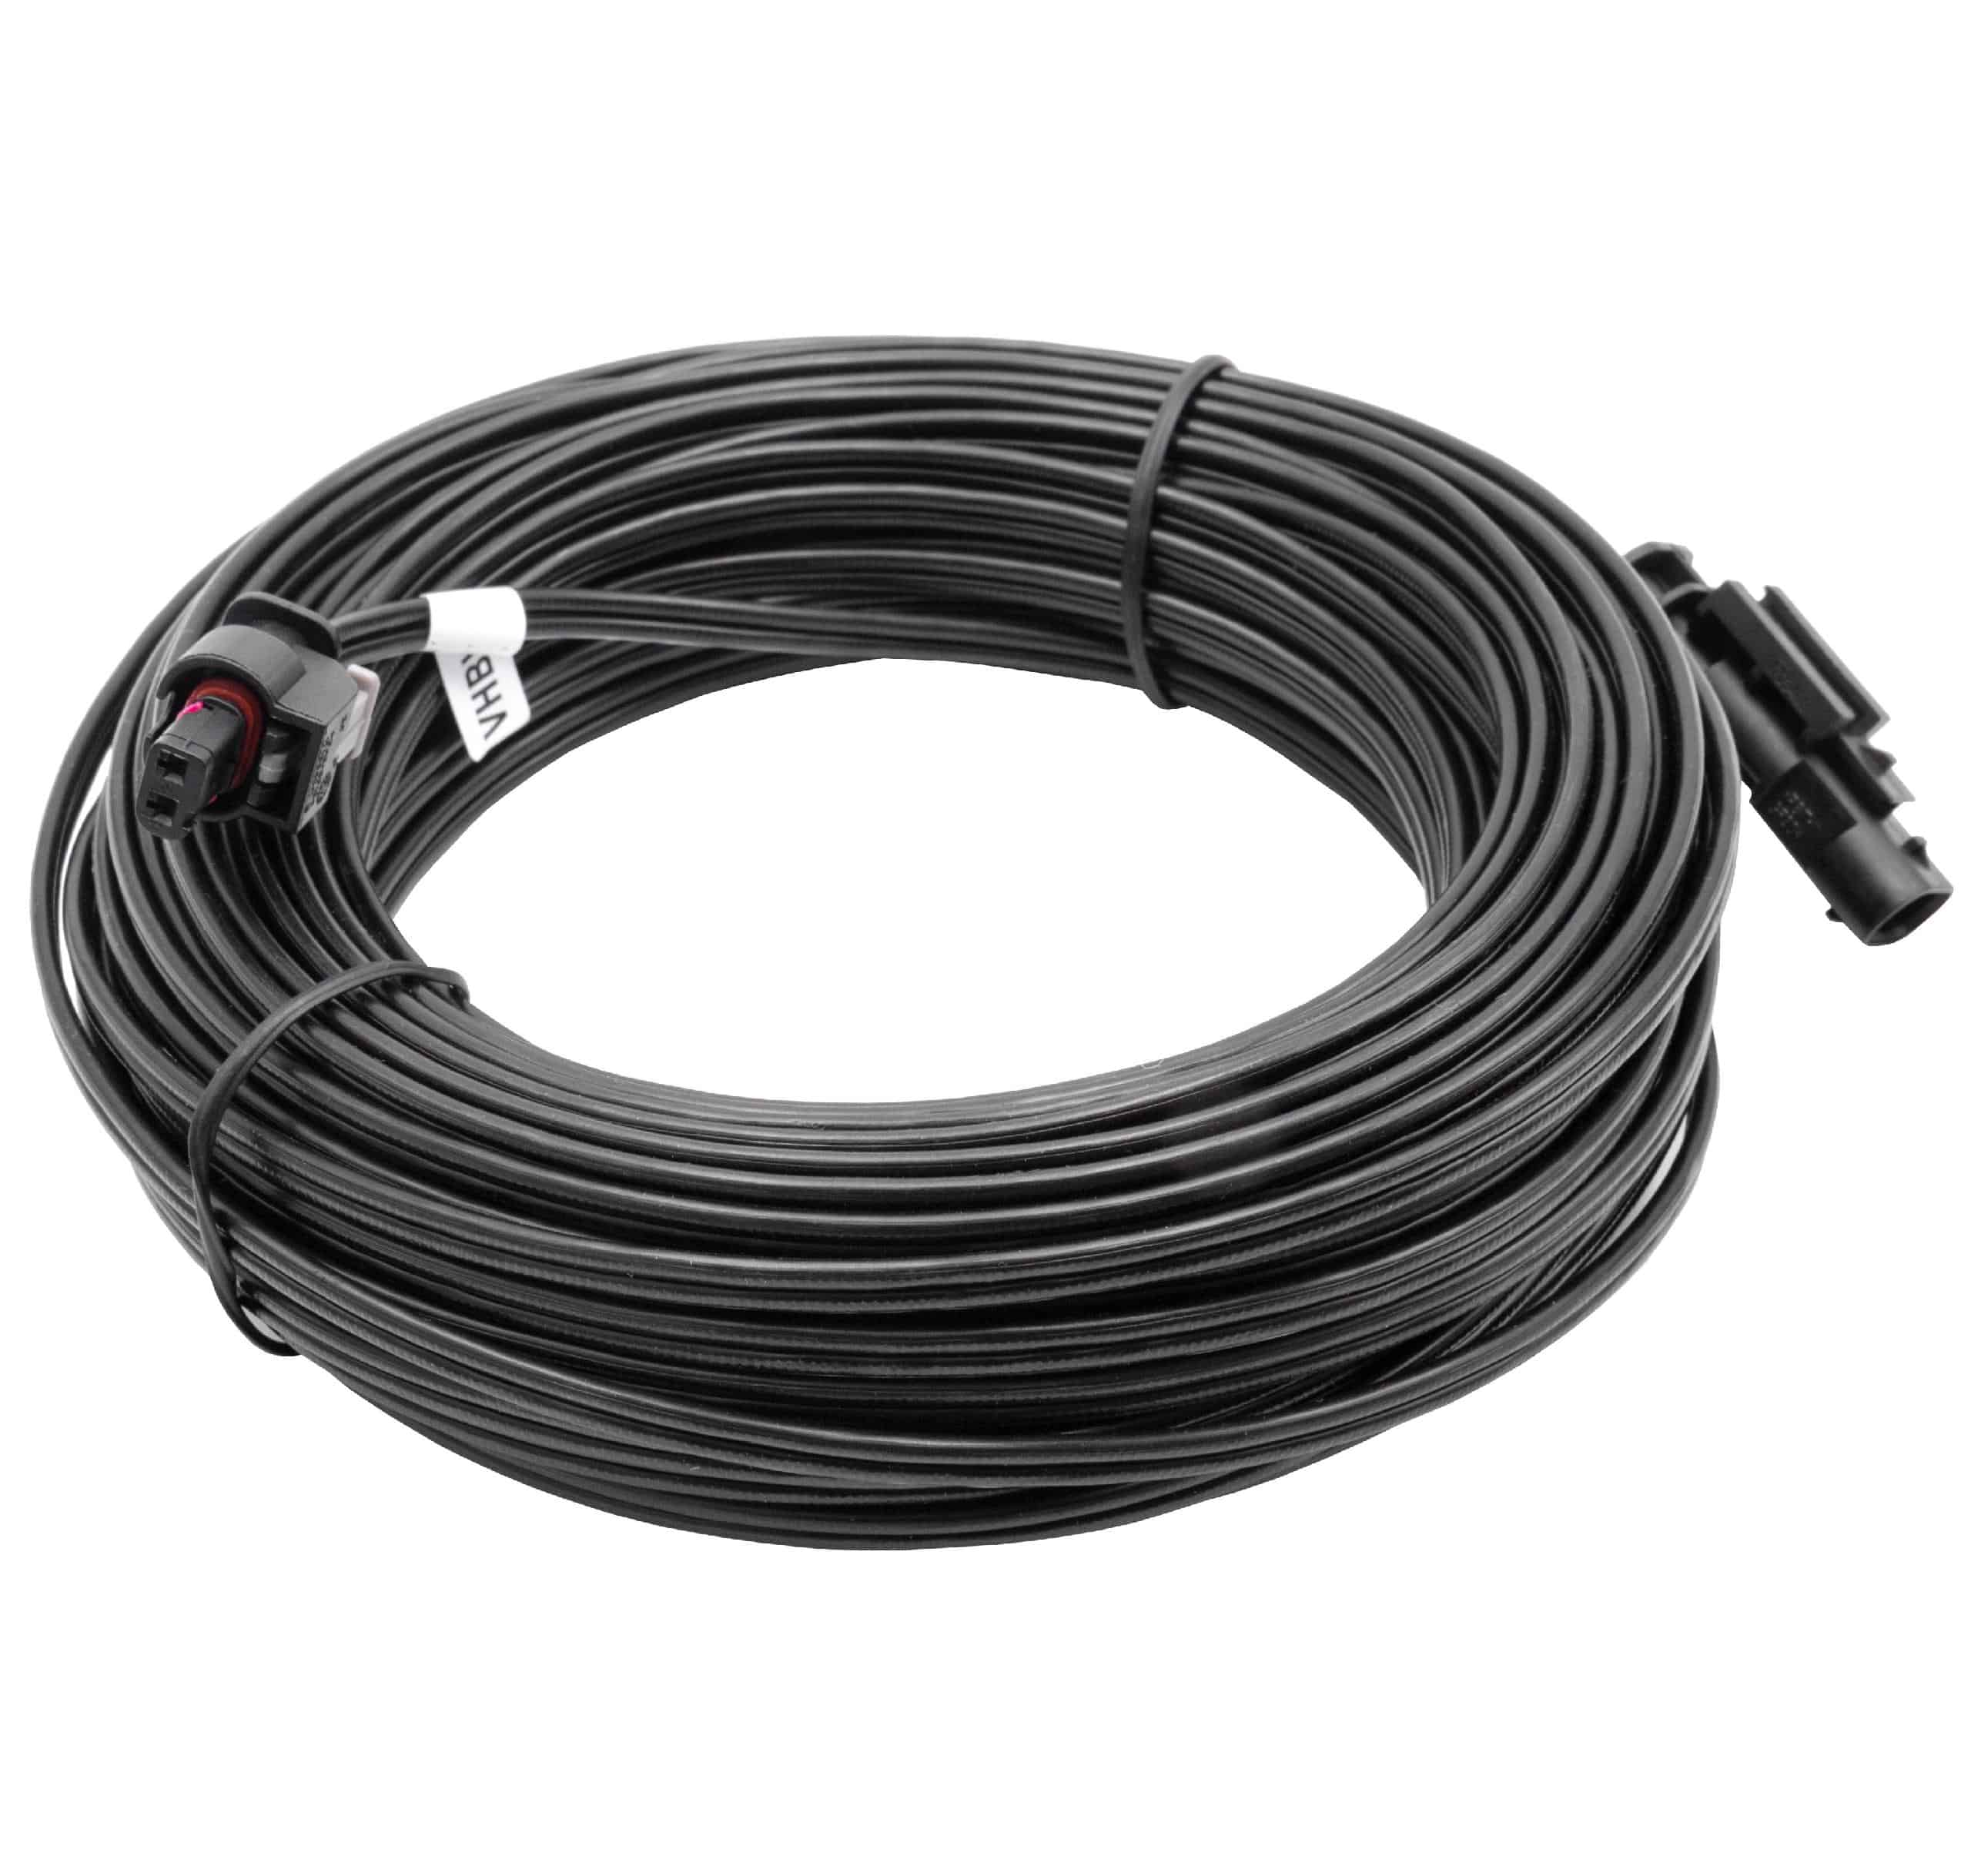 Cable de bajo voltaje reemplaza Husqvarna 581 16 66-06, 581 16 66-04, 581 16 66-02 - cable trafo, 20 m